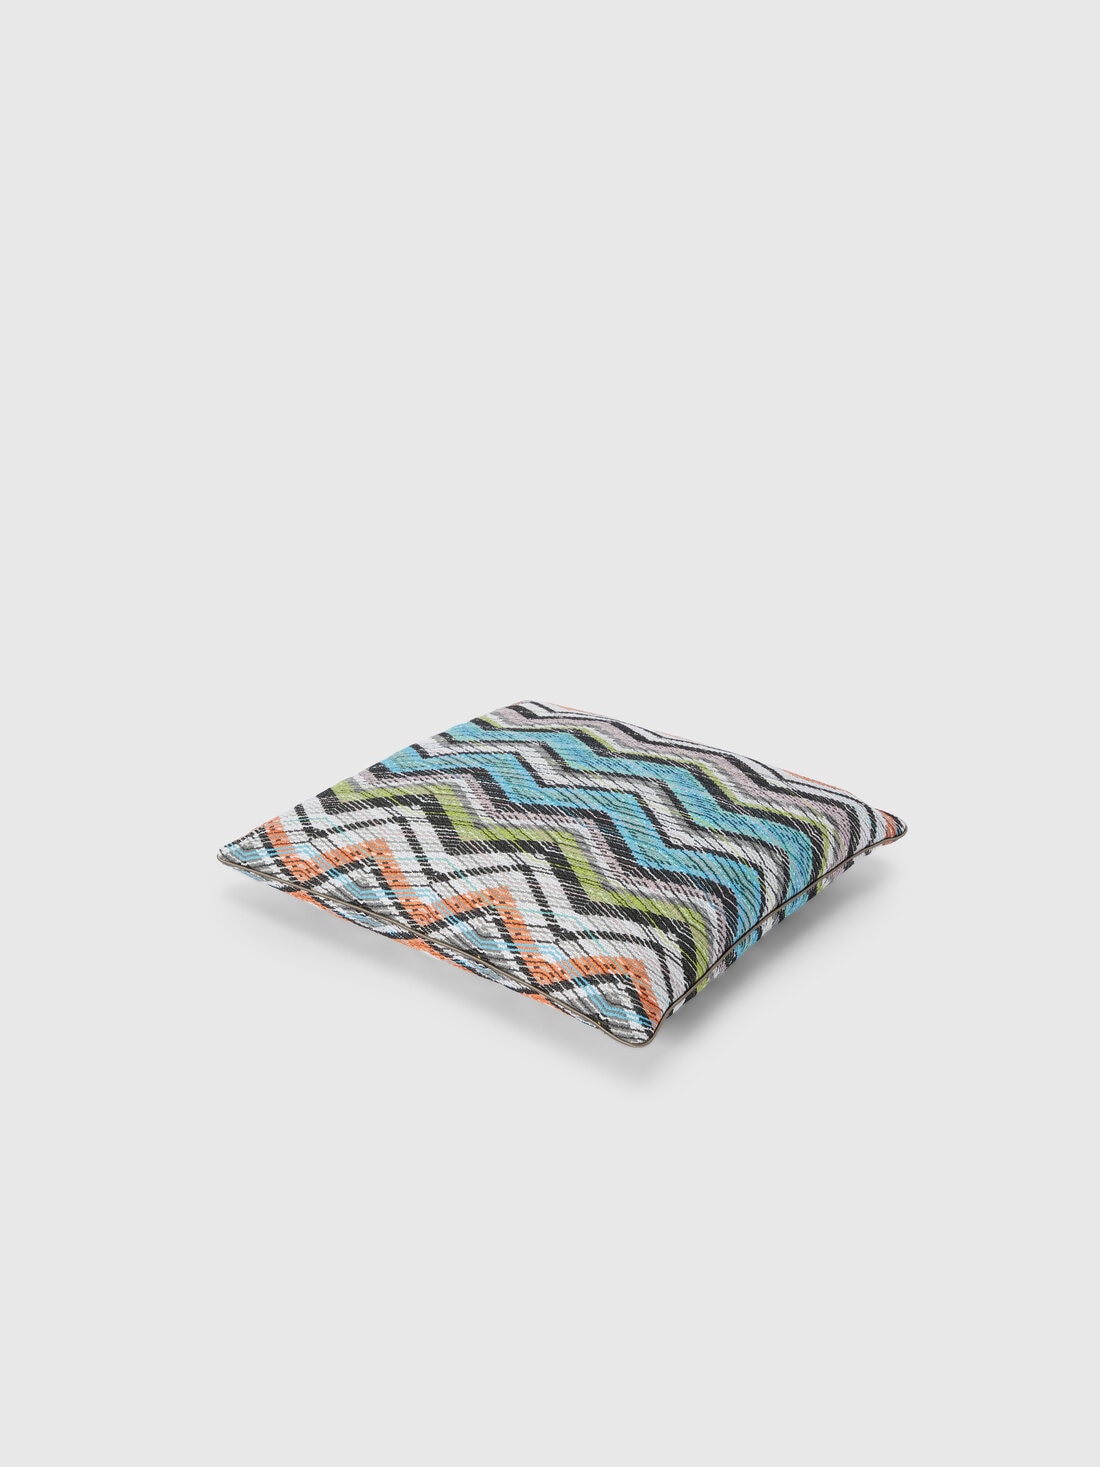 Carioca cushion 40x40 cm, Multicoloured  - 8053147118529 - 1